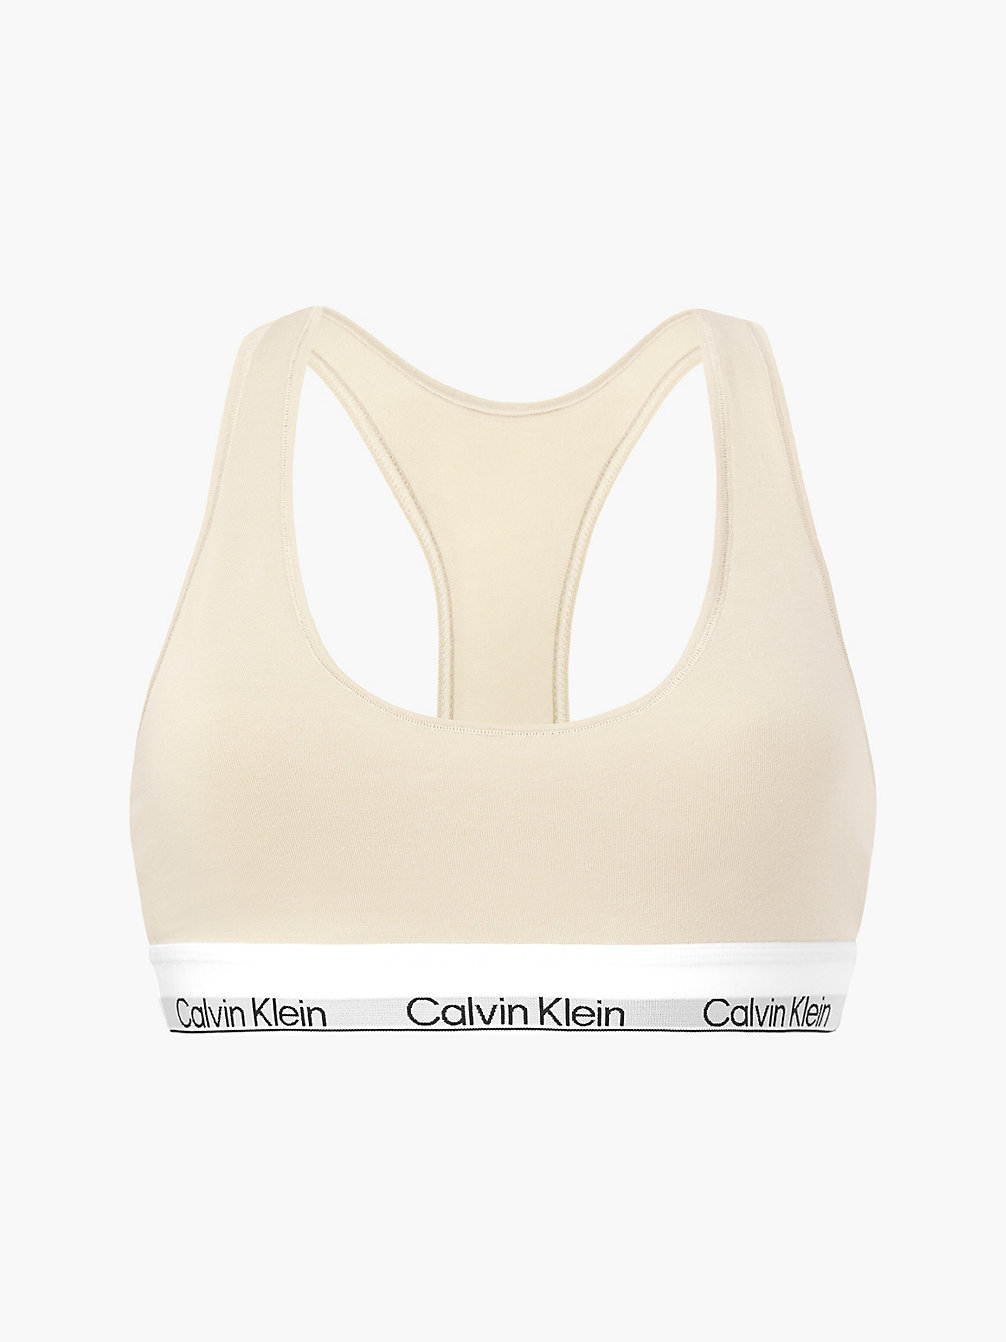 STONE Bralette – Modern Cotton undefined Damen Calvin Klein